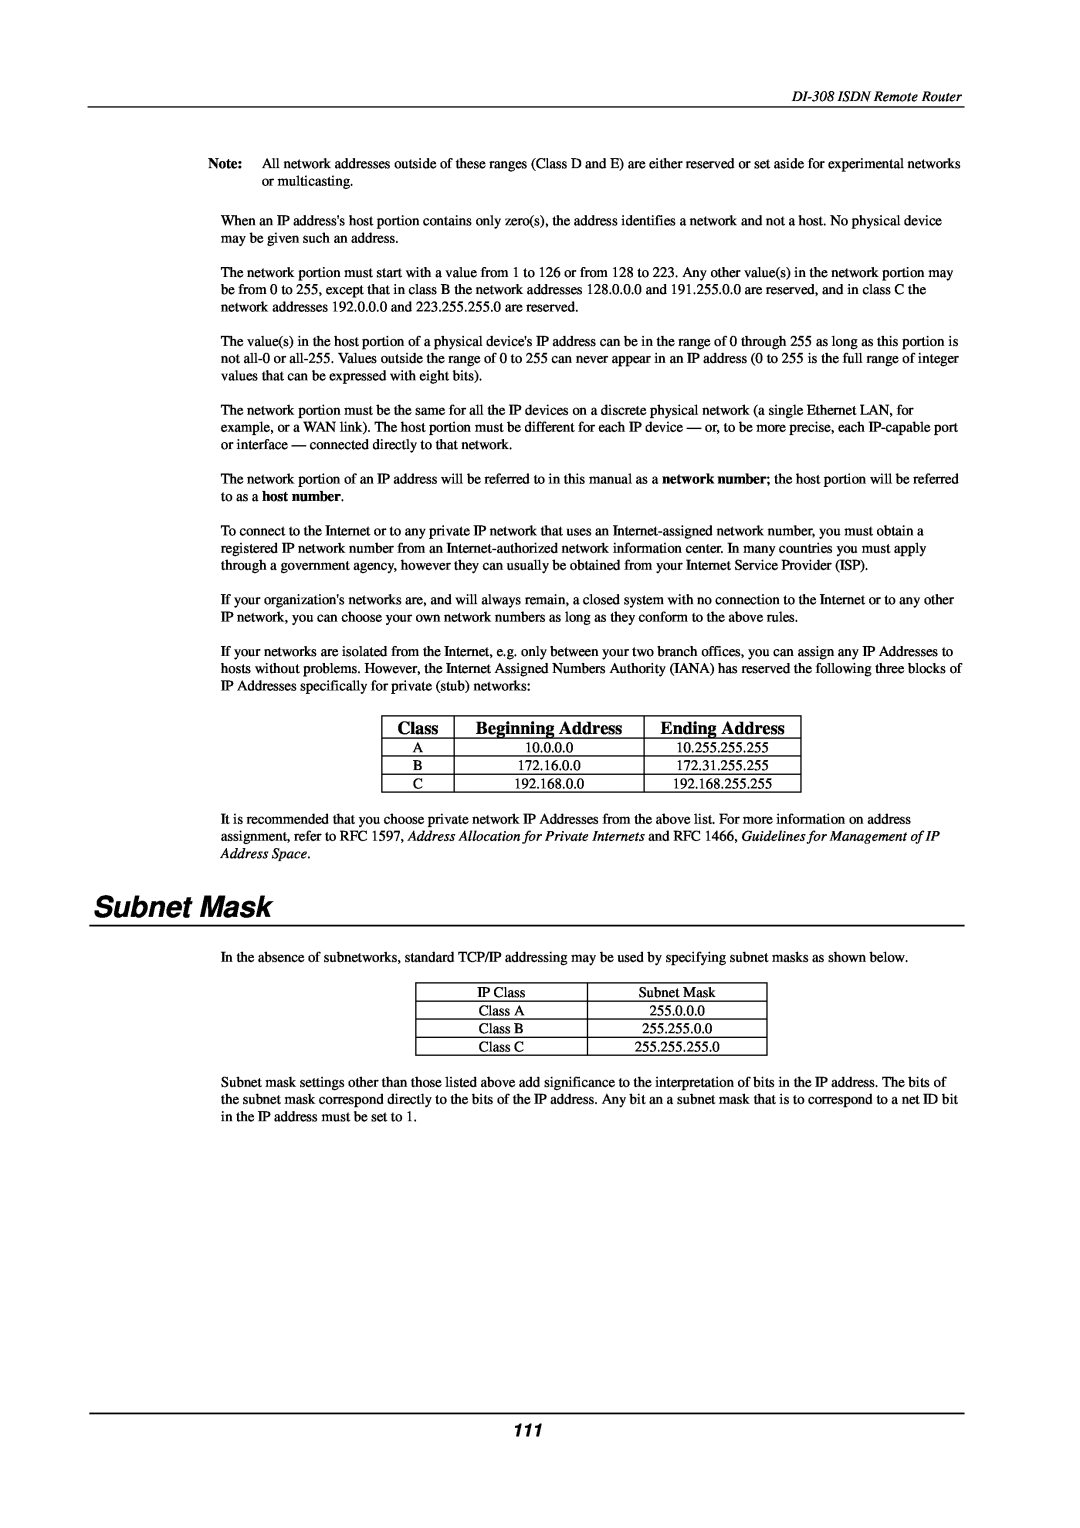 D-Link DI-308 manual Subnet Mask, Class, Beginning Address, Ending Address 